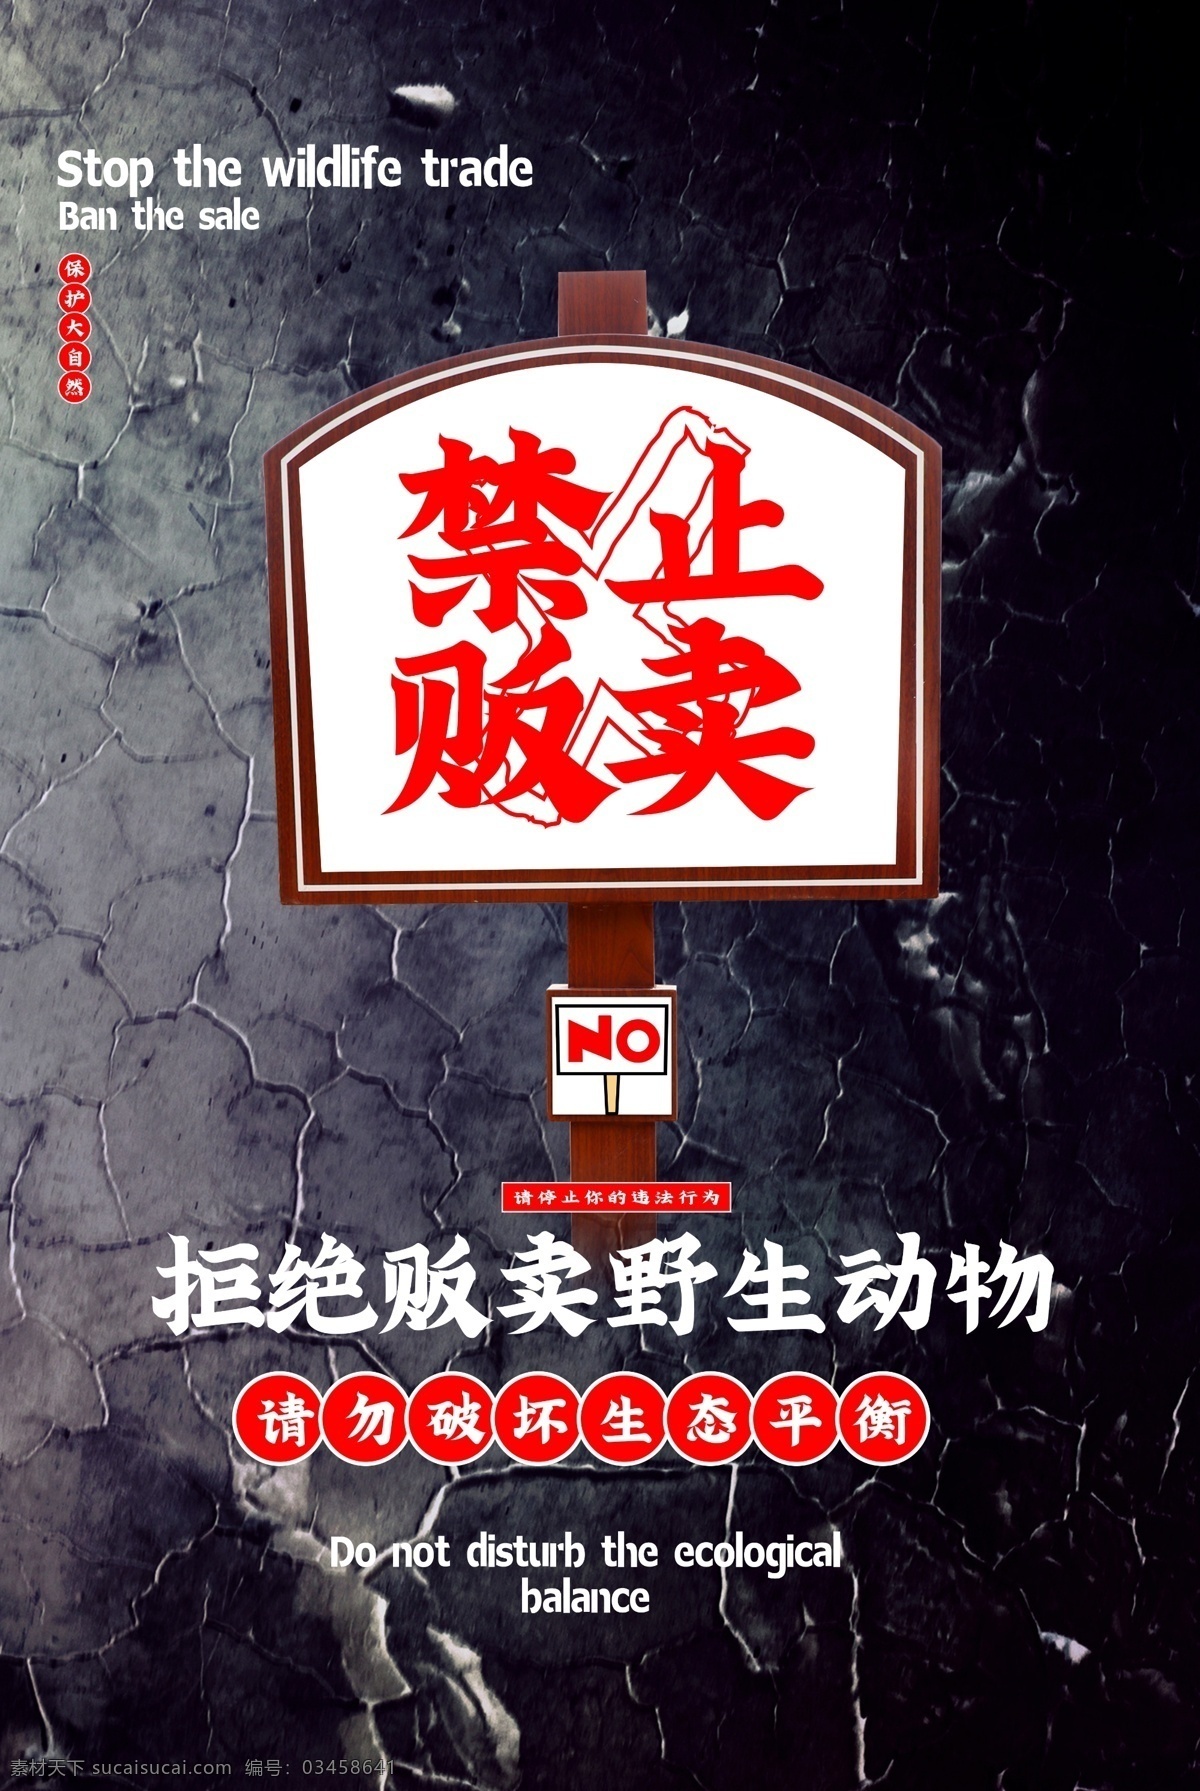 禁止 贩卖 野生动物 公益 宣传海报 禁止贩卖 宣传 海报 社会